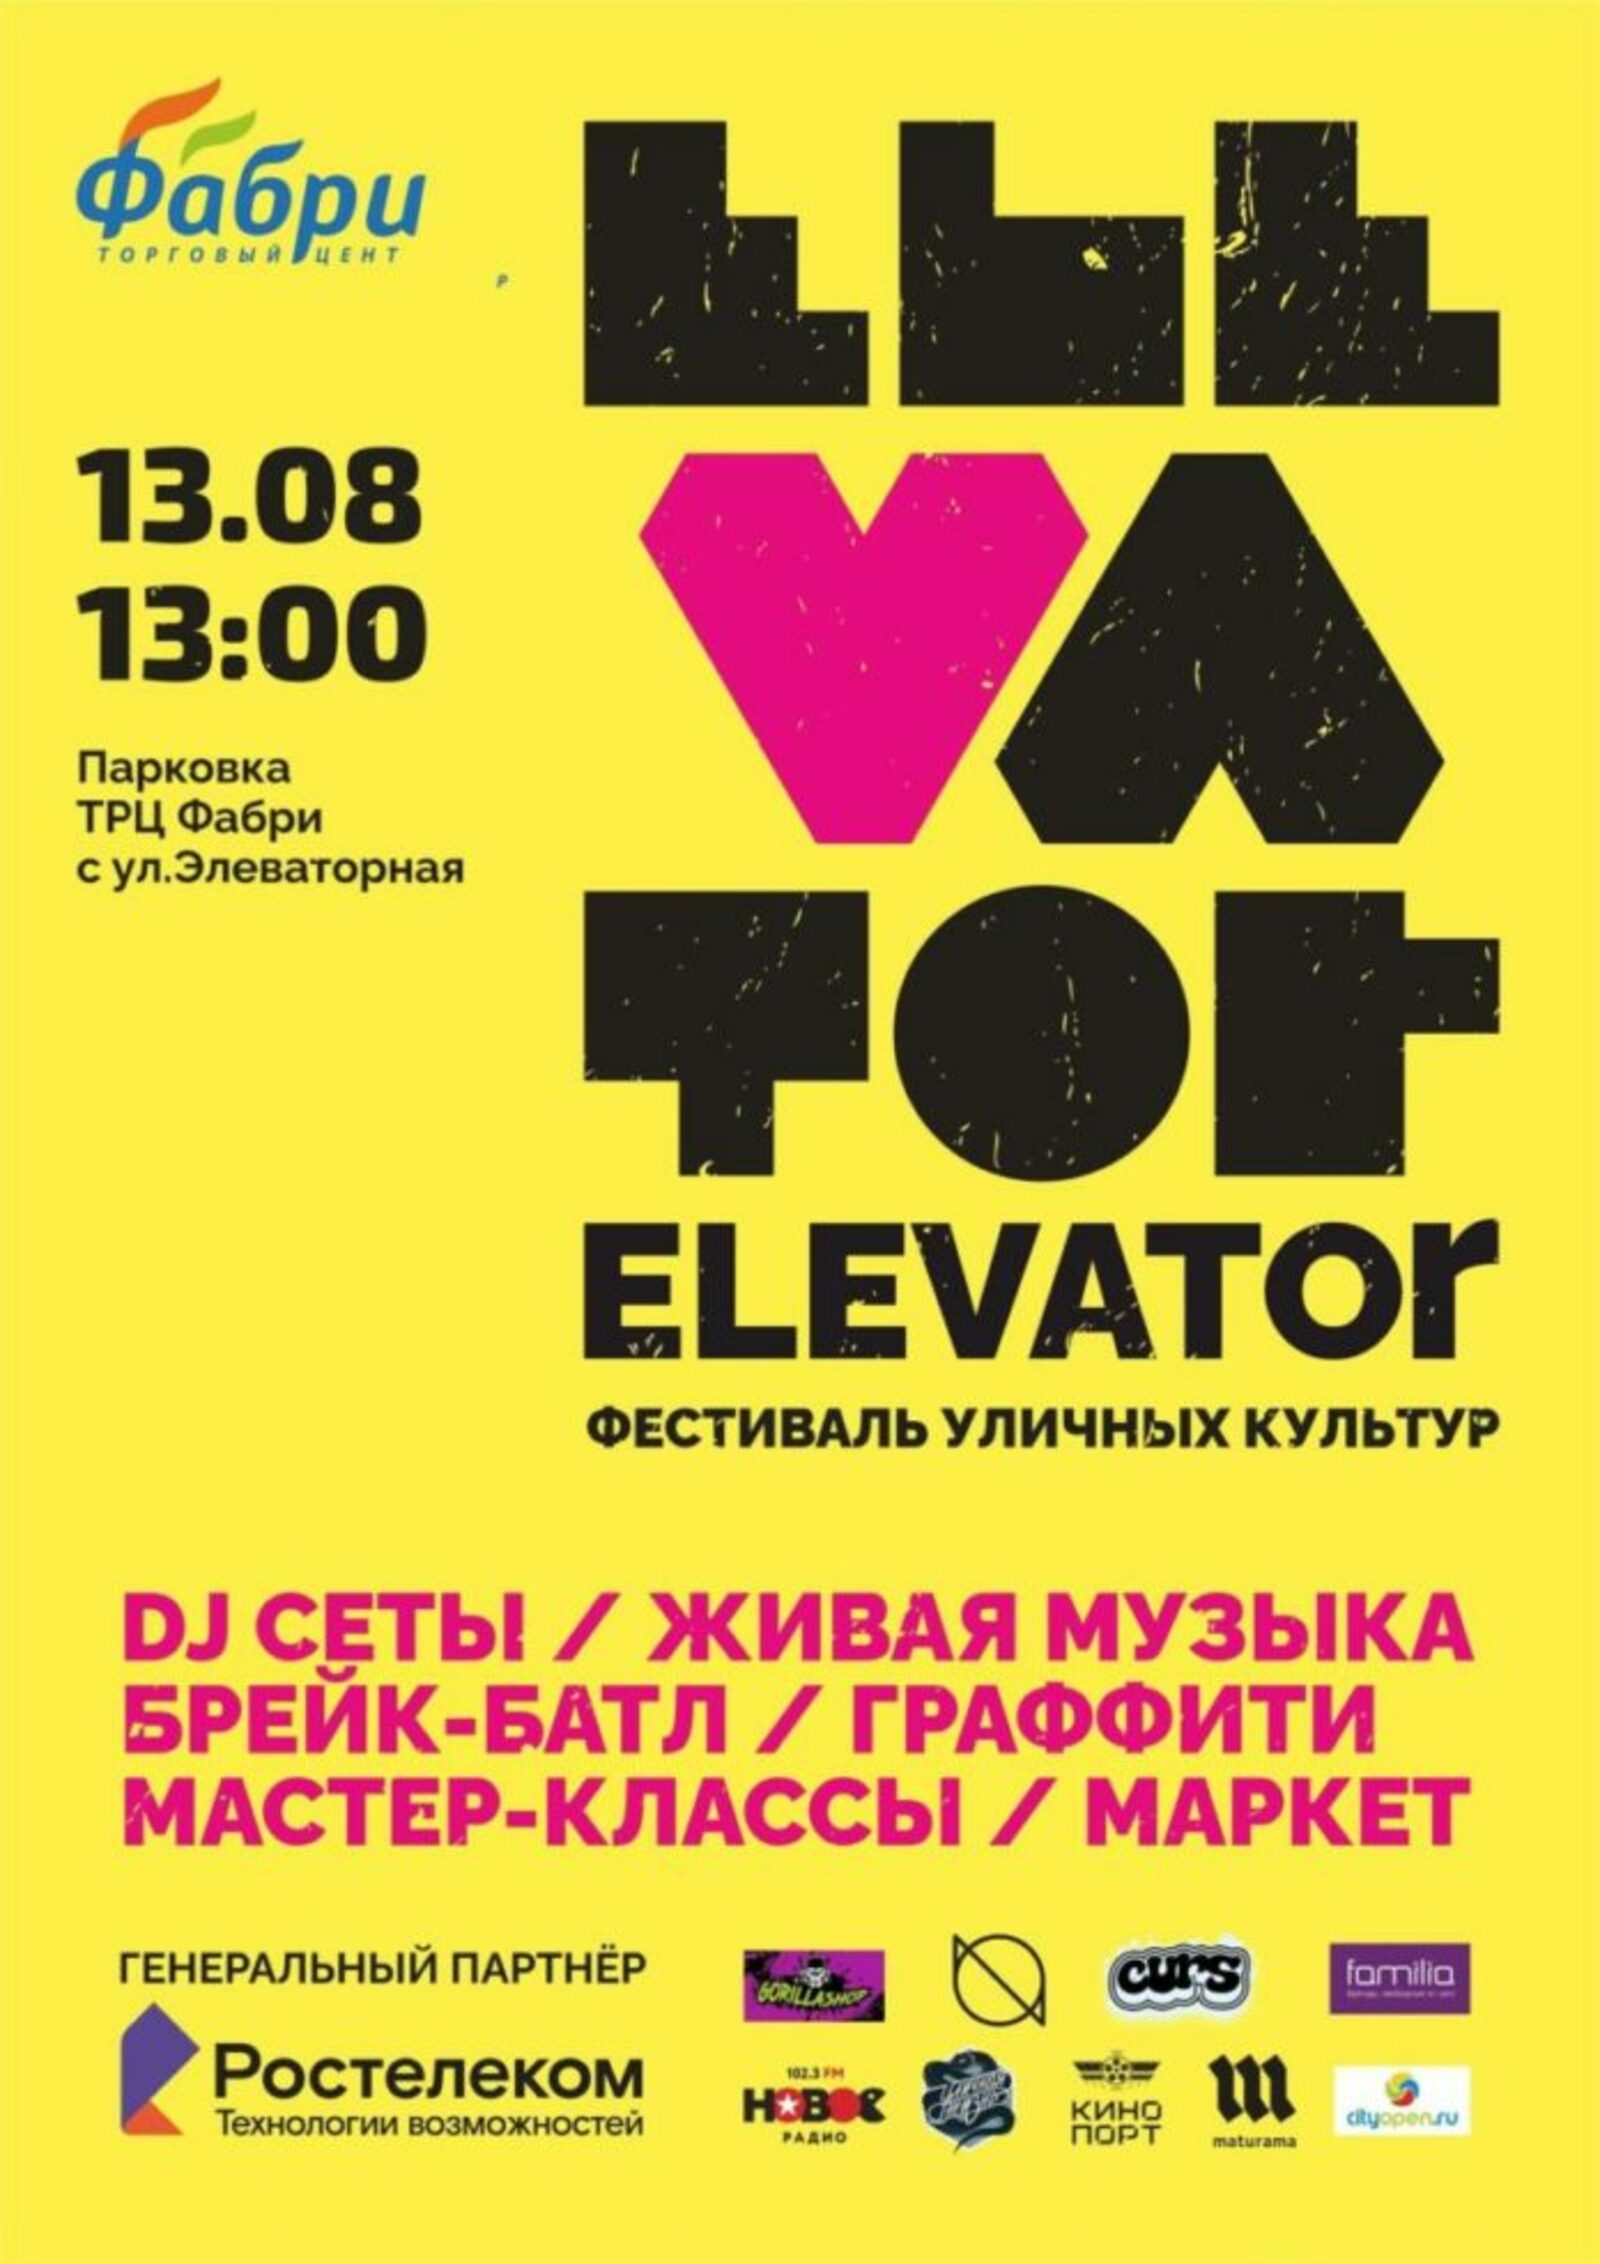 В Стерлитамаке пройдёт уличный фестиваль культур «ELEVATOR»